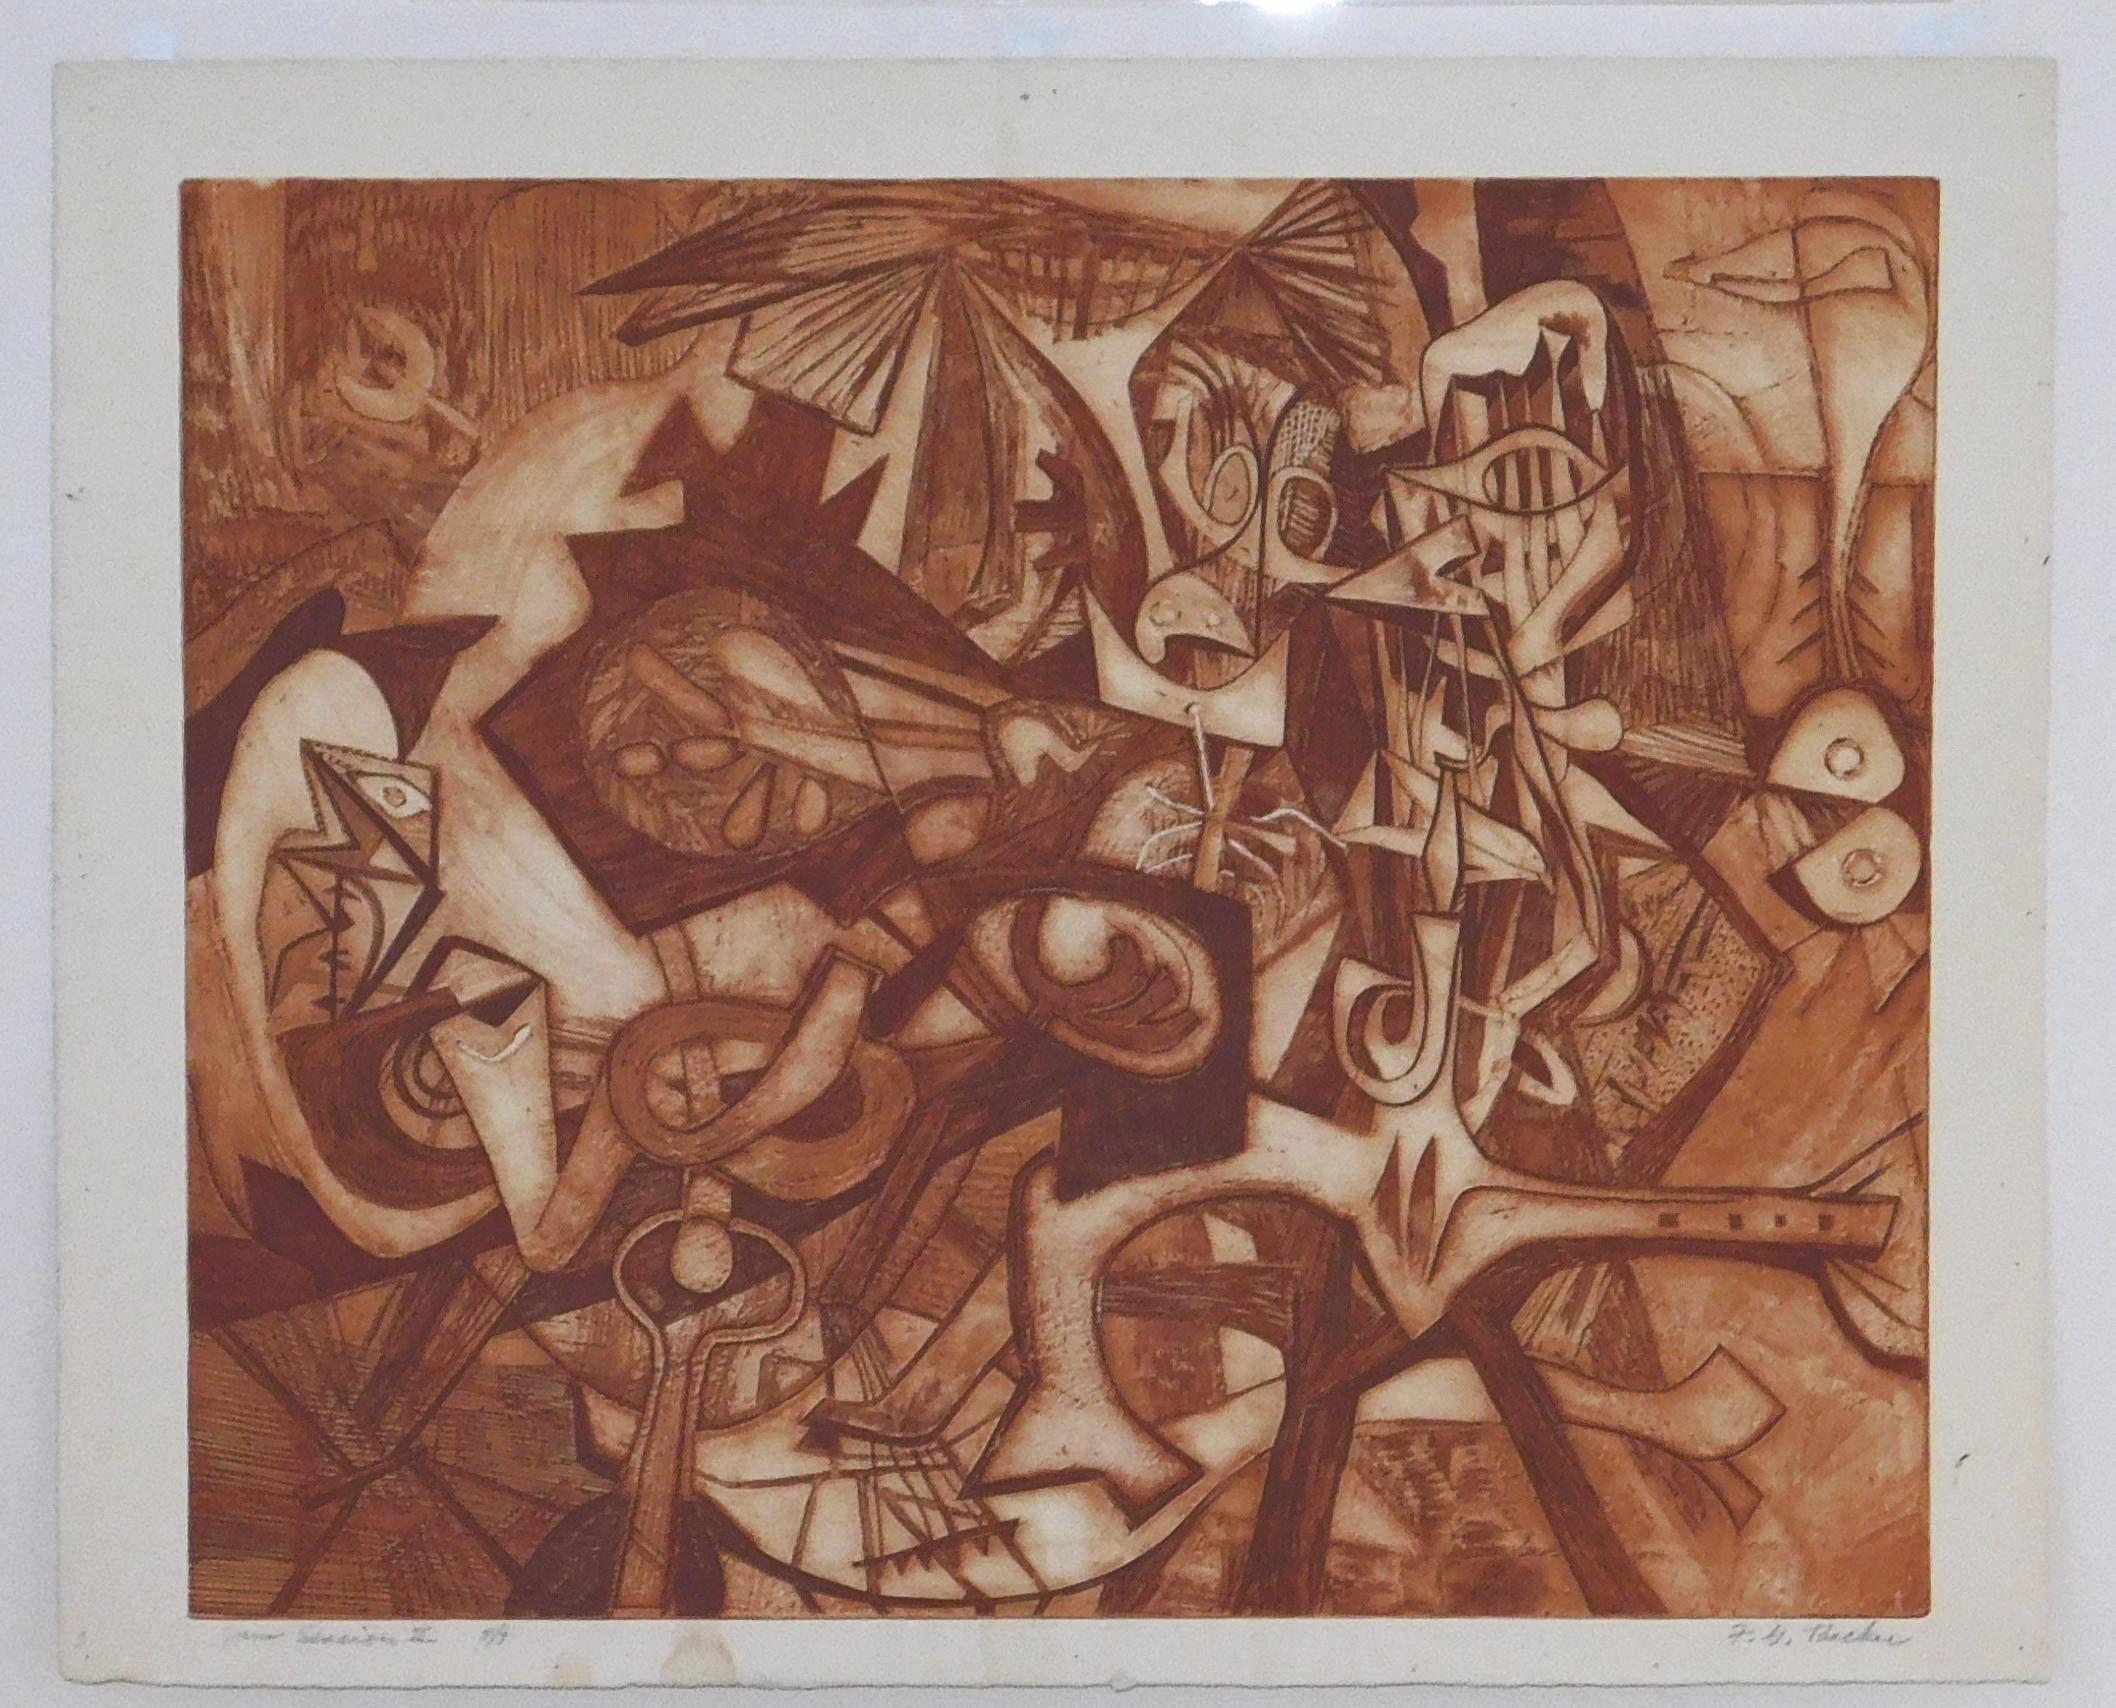 Wunderschöne abstrakte Original-Radierung in Sepiatusche von Frederick Becker (1913-2004).
Das Bild misst 19 3/4